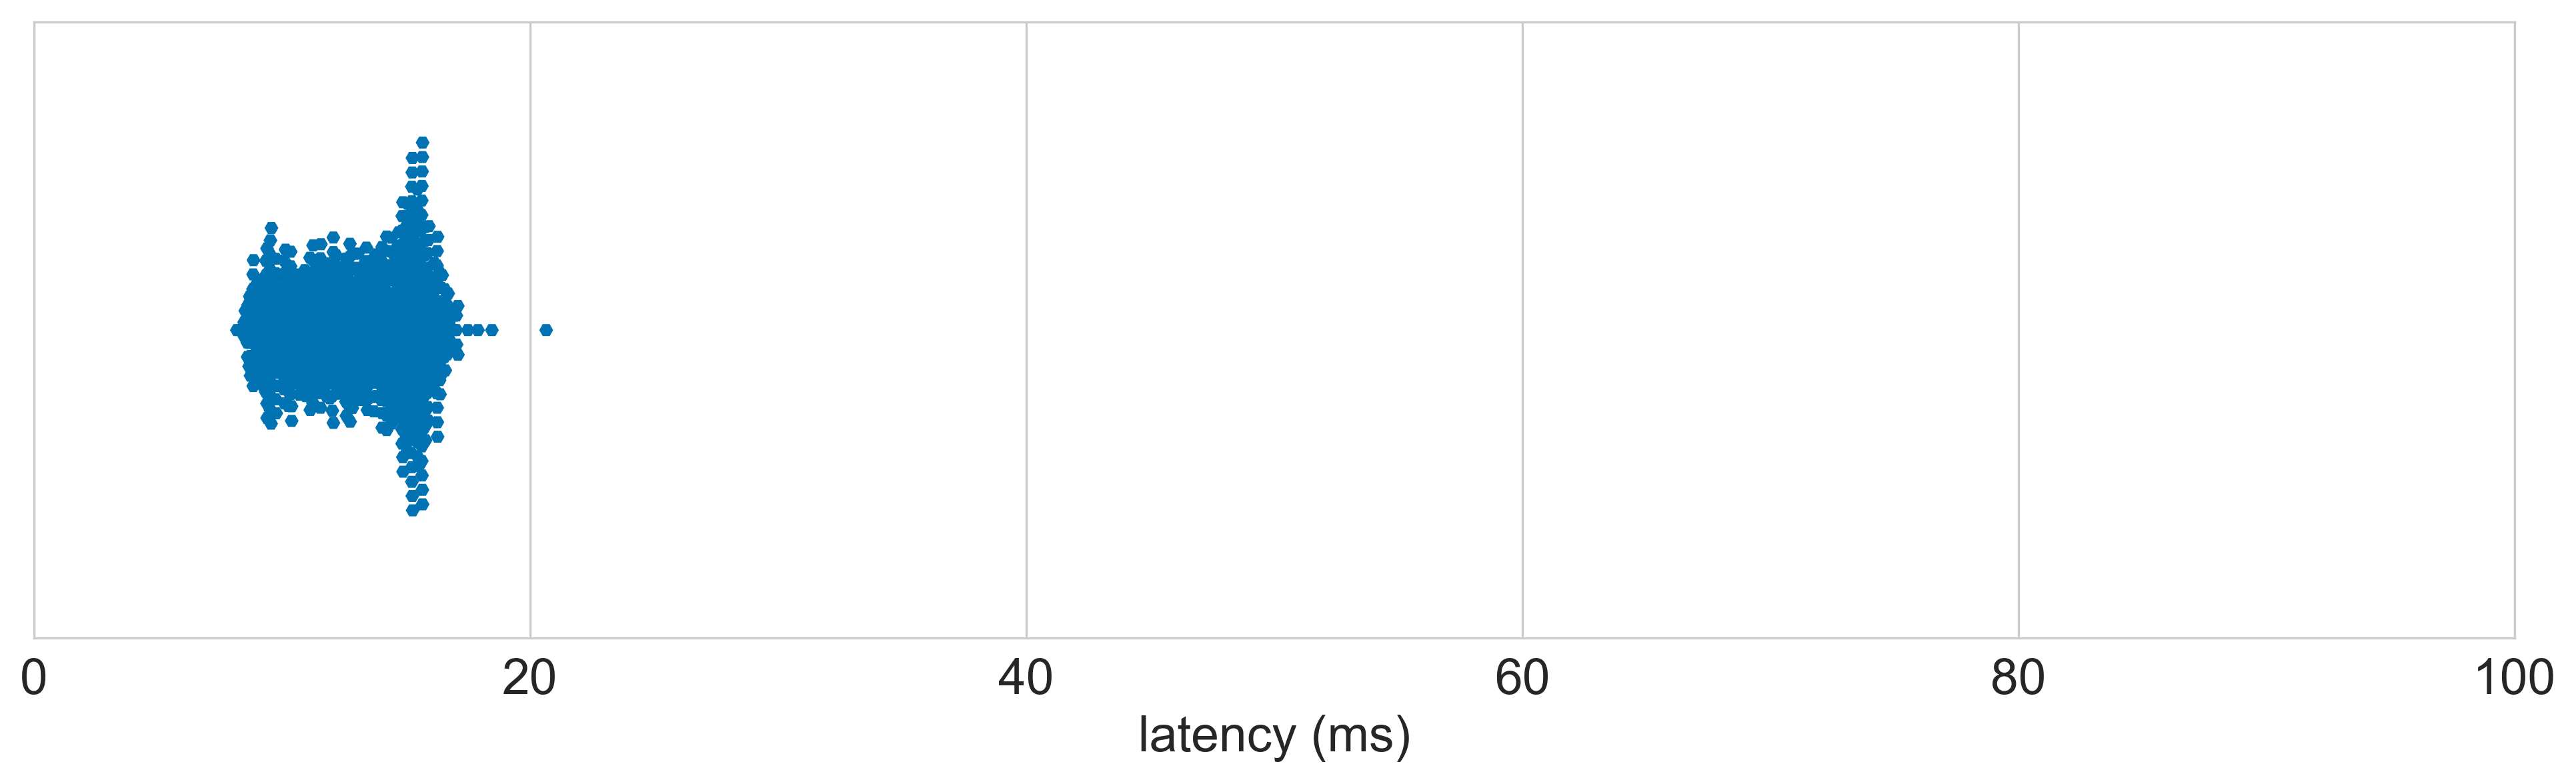 Keychron_Keychron_Q1 latency distribution 